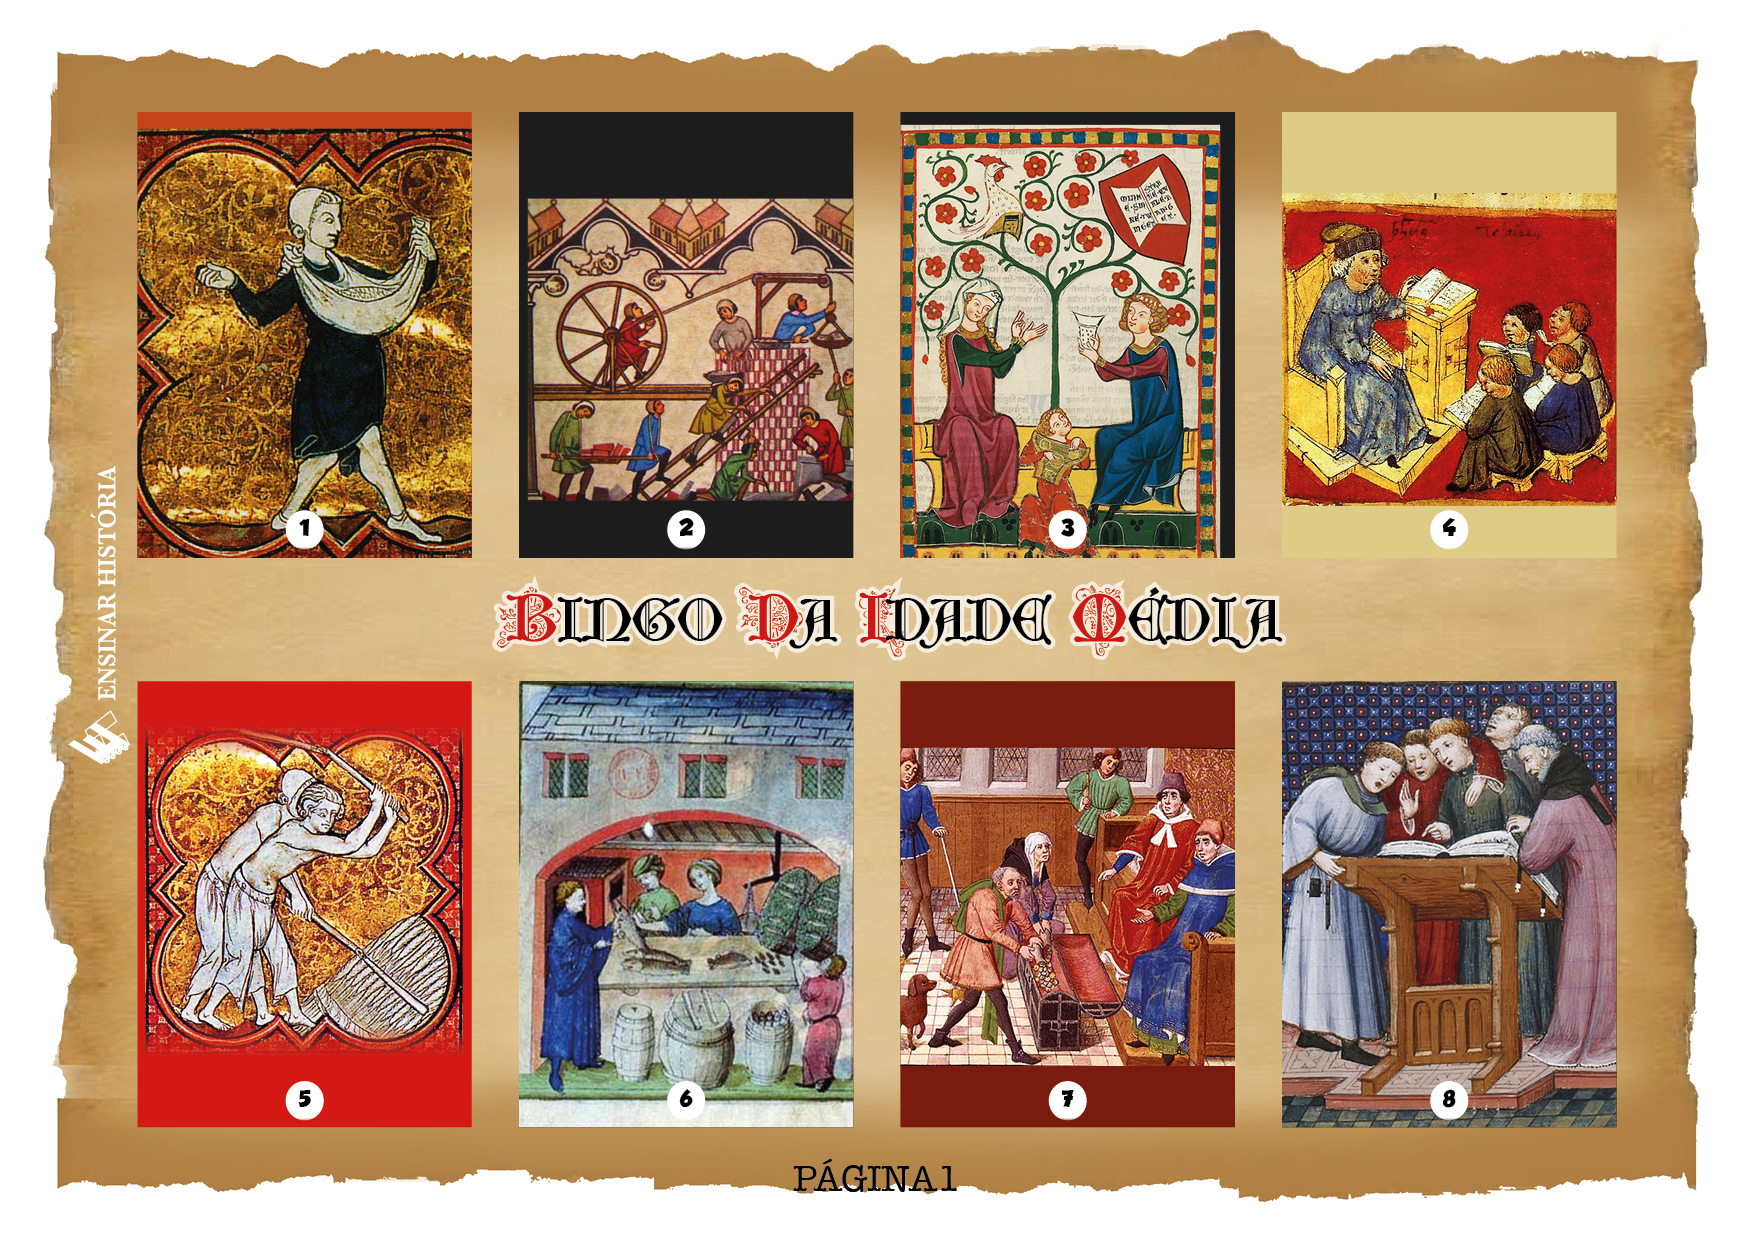 Bingo Iluminado da Idade Média (jogo para imprimir)